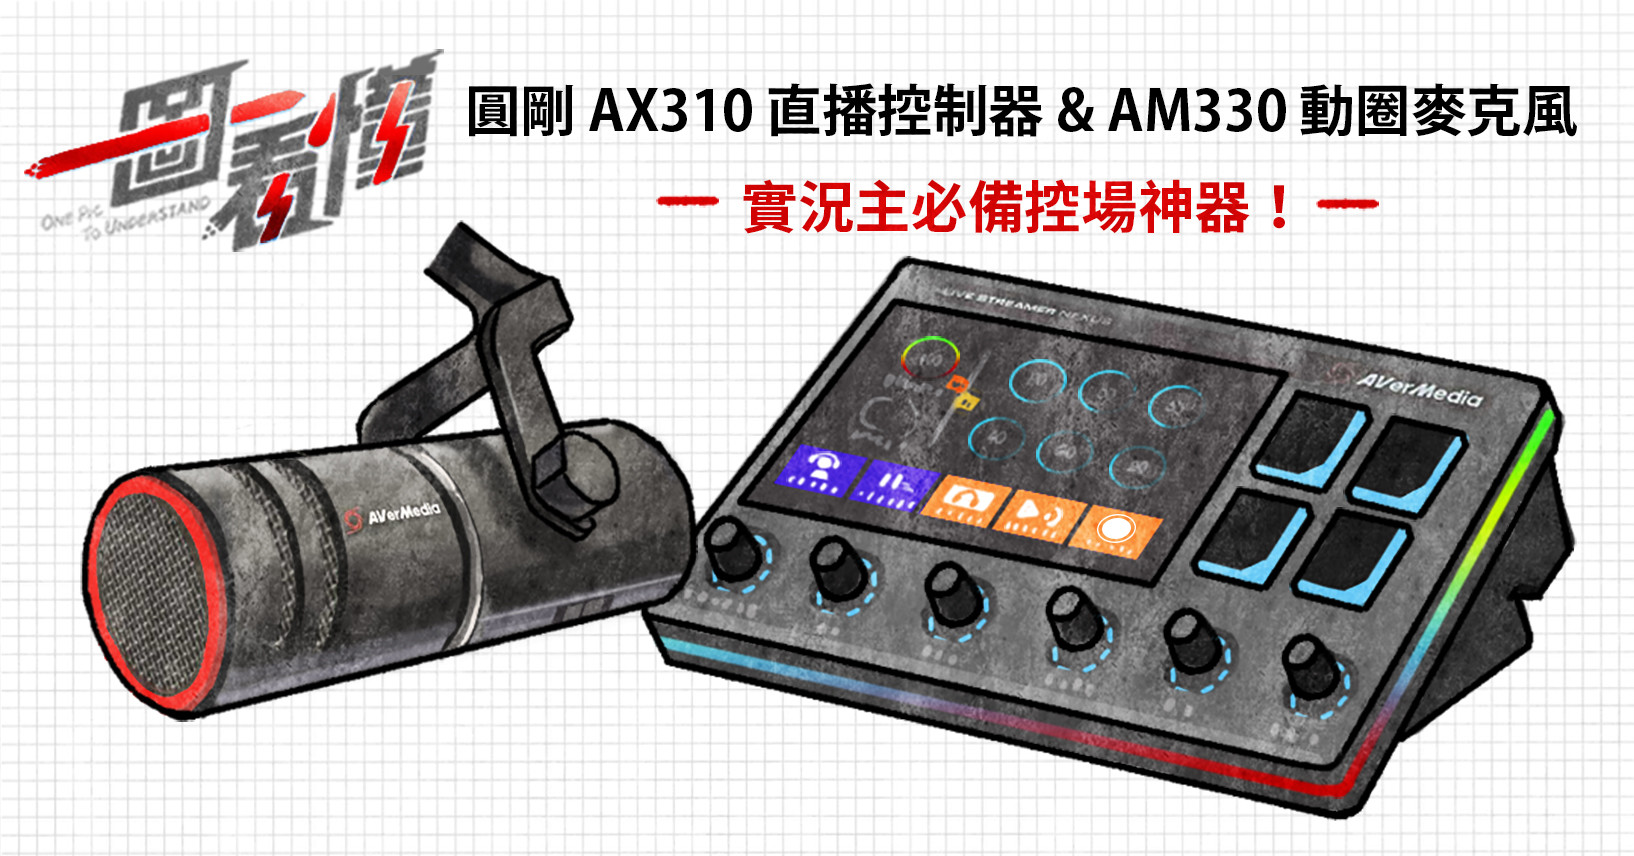 照片中提到了圓剛 AX310直播控制器& AM330動圈麥克風、ONE Pic、To UncenSIAND，包含了電子產品、電子產品、產品設計、電子樂器、電子配件